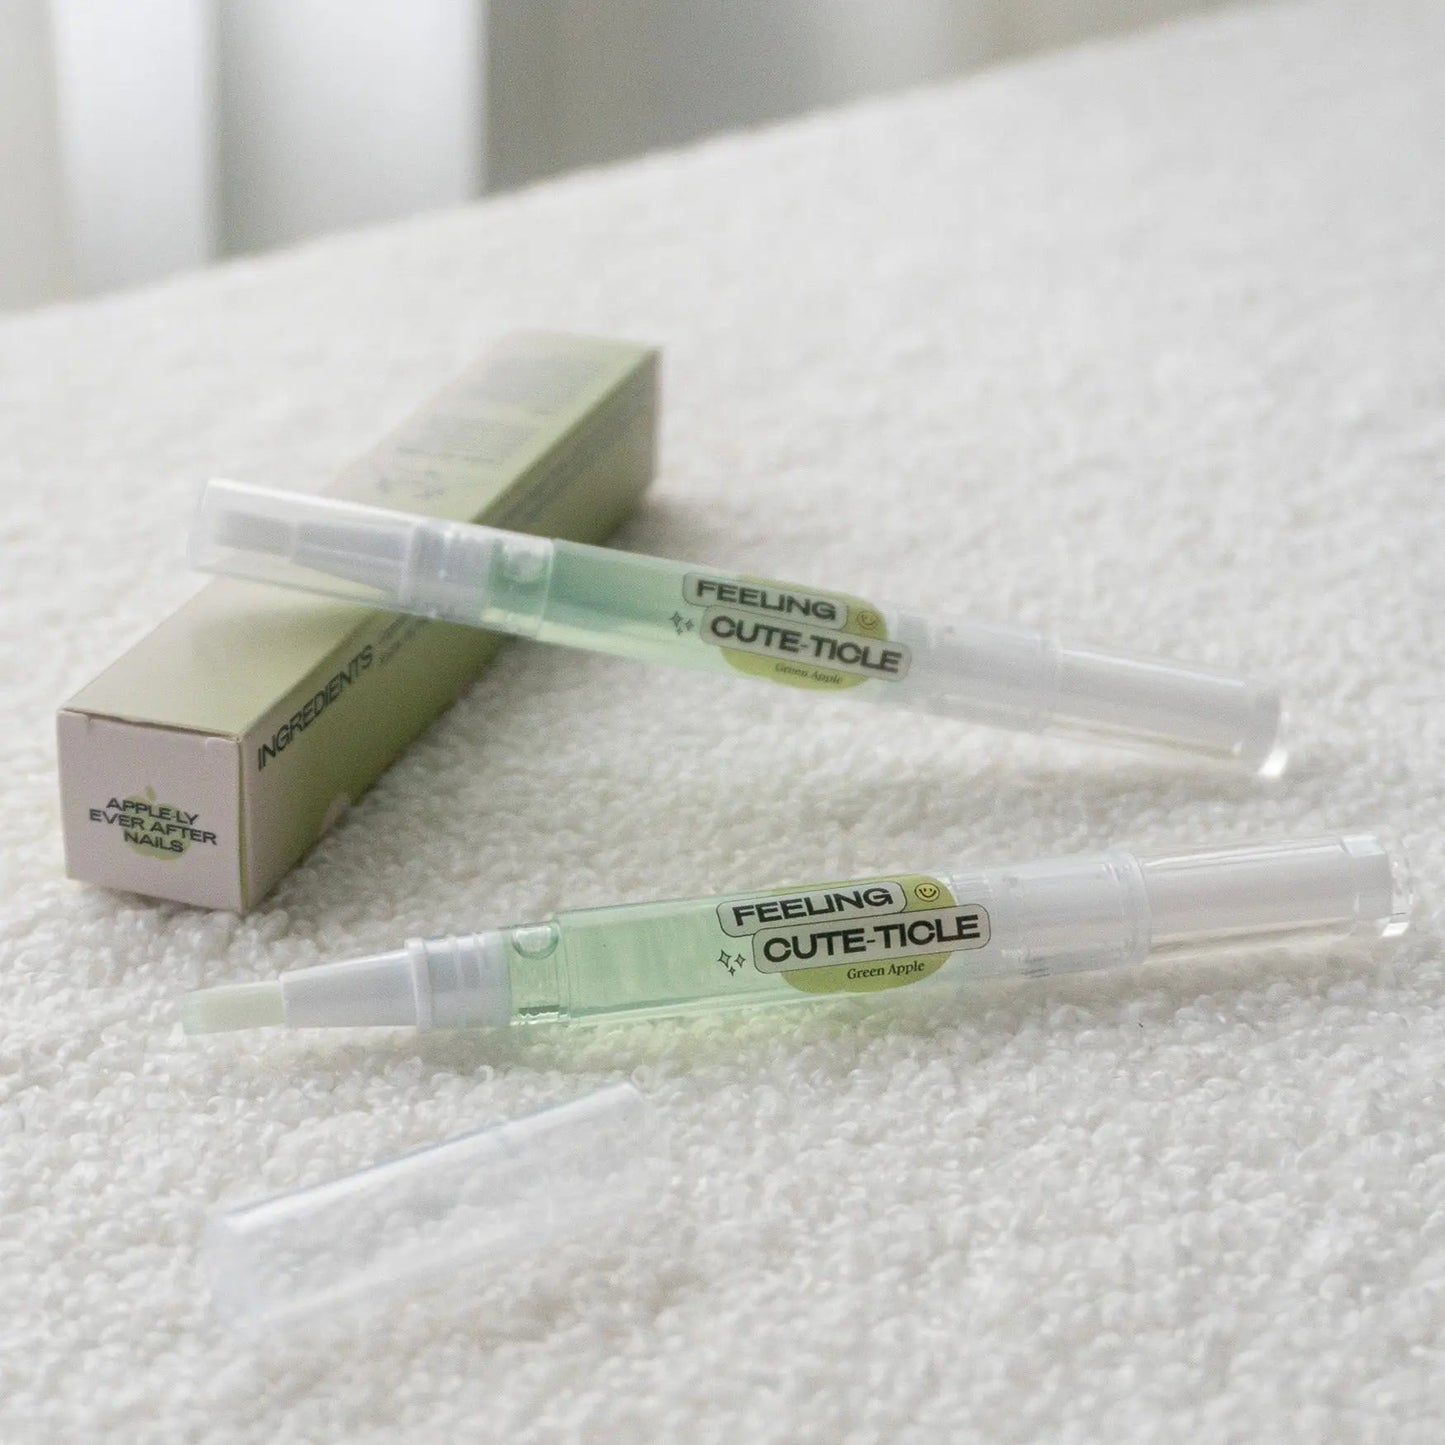 Nourishing Cute-ticle Oil Pen & Gewel Gel Nail Sticker Remover [Green Apple]